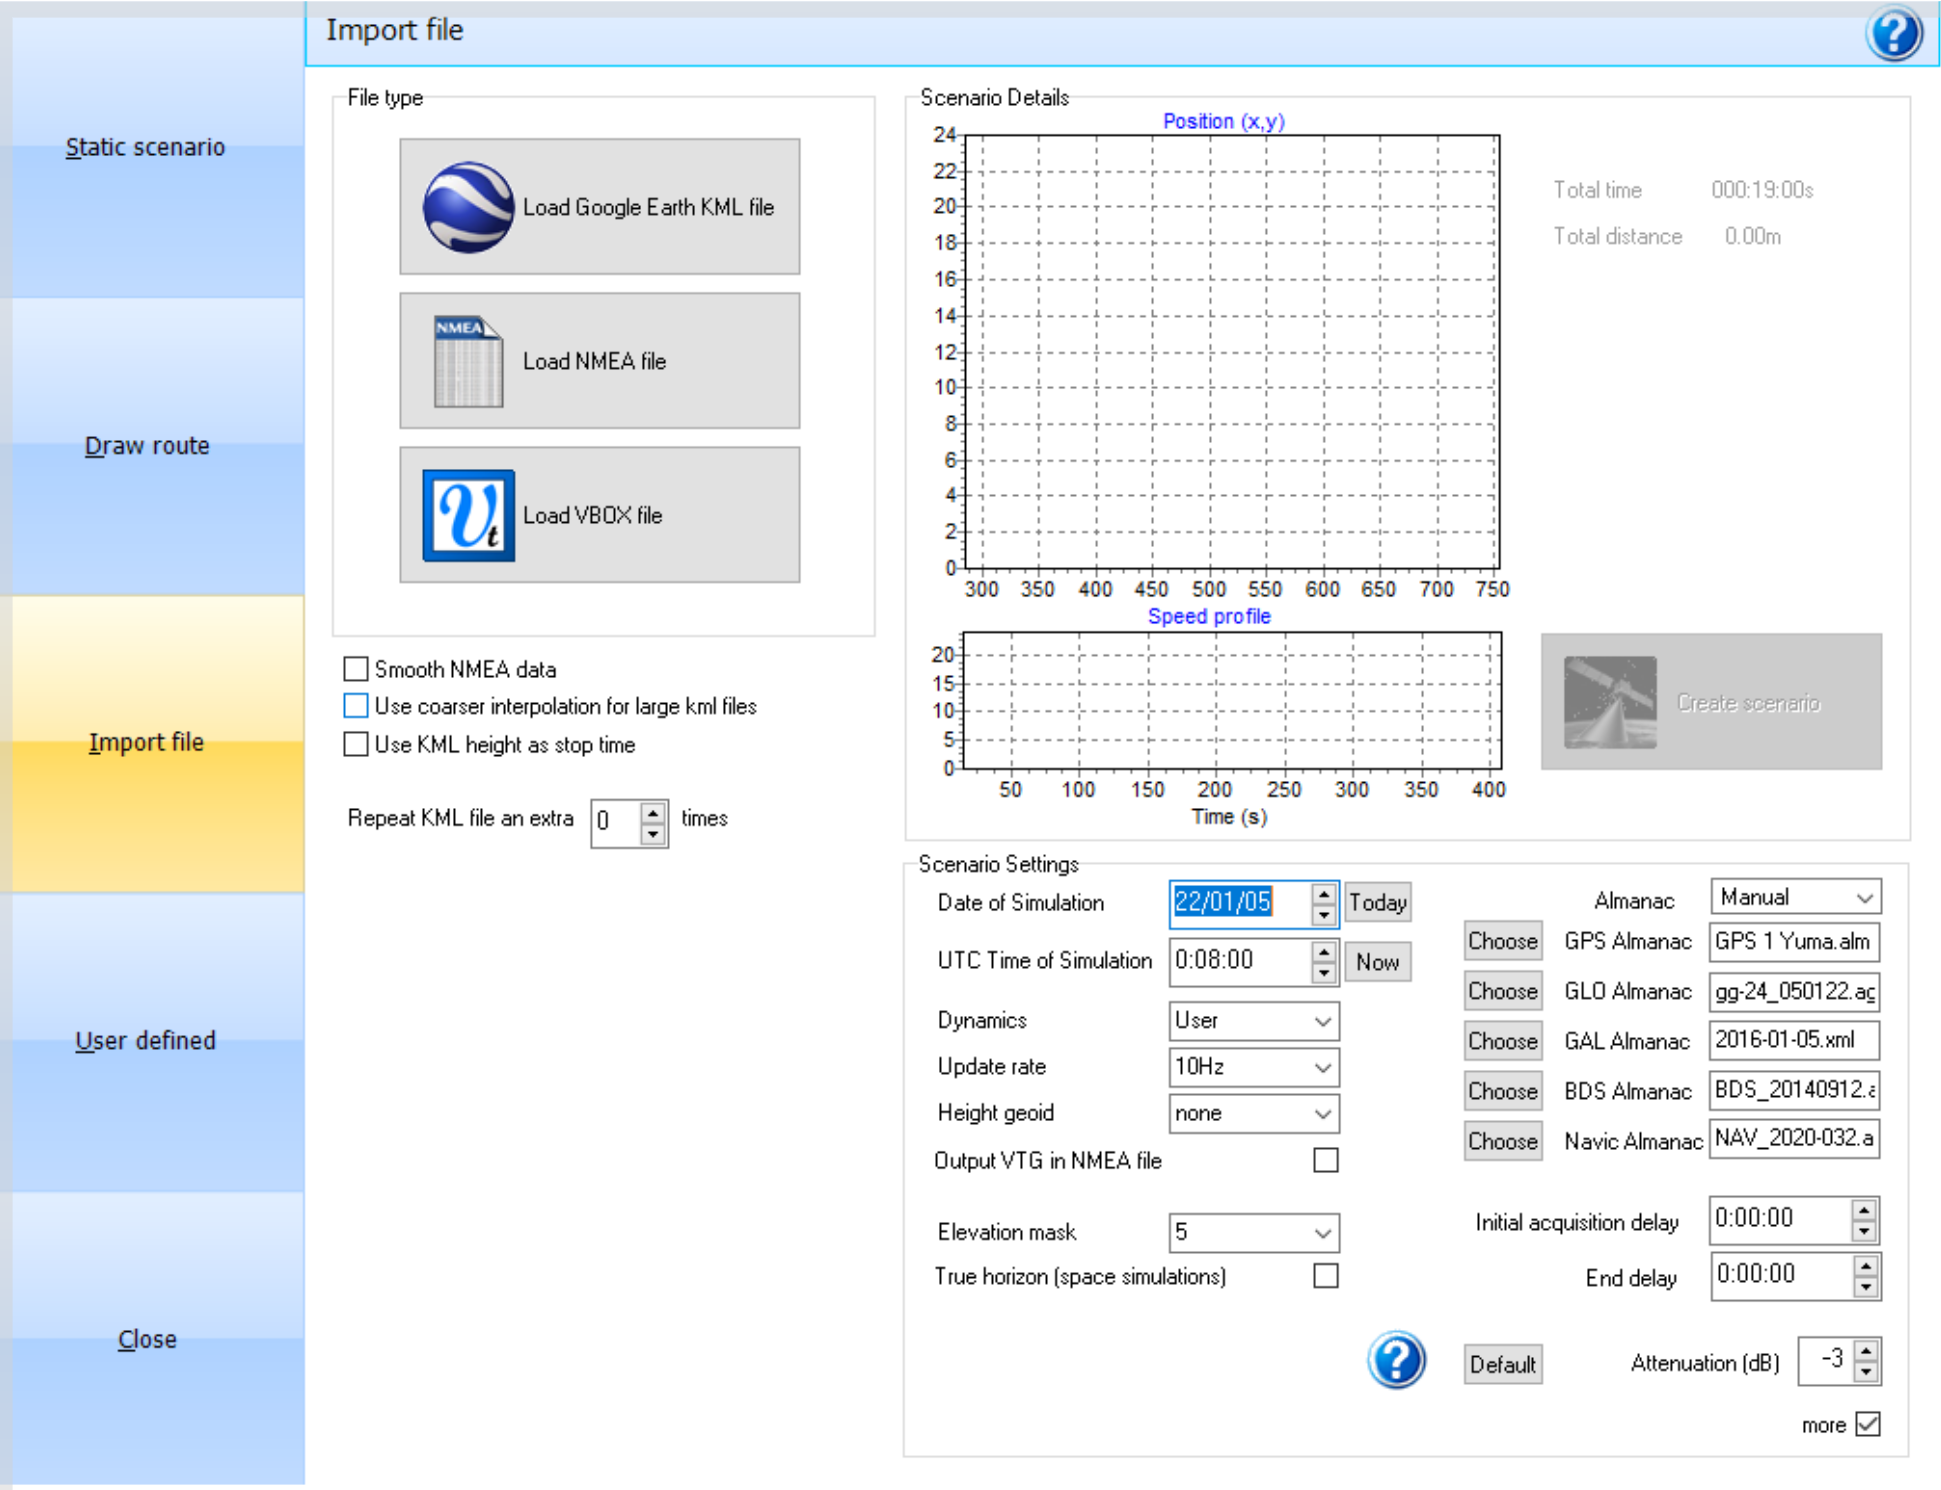 SatGen V3 1.14.27_Import File Screen.png